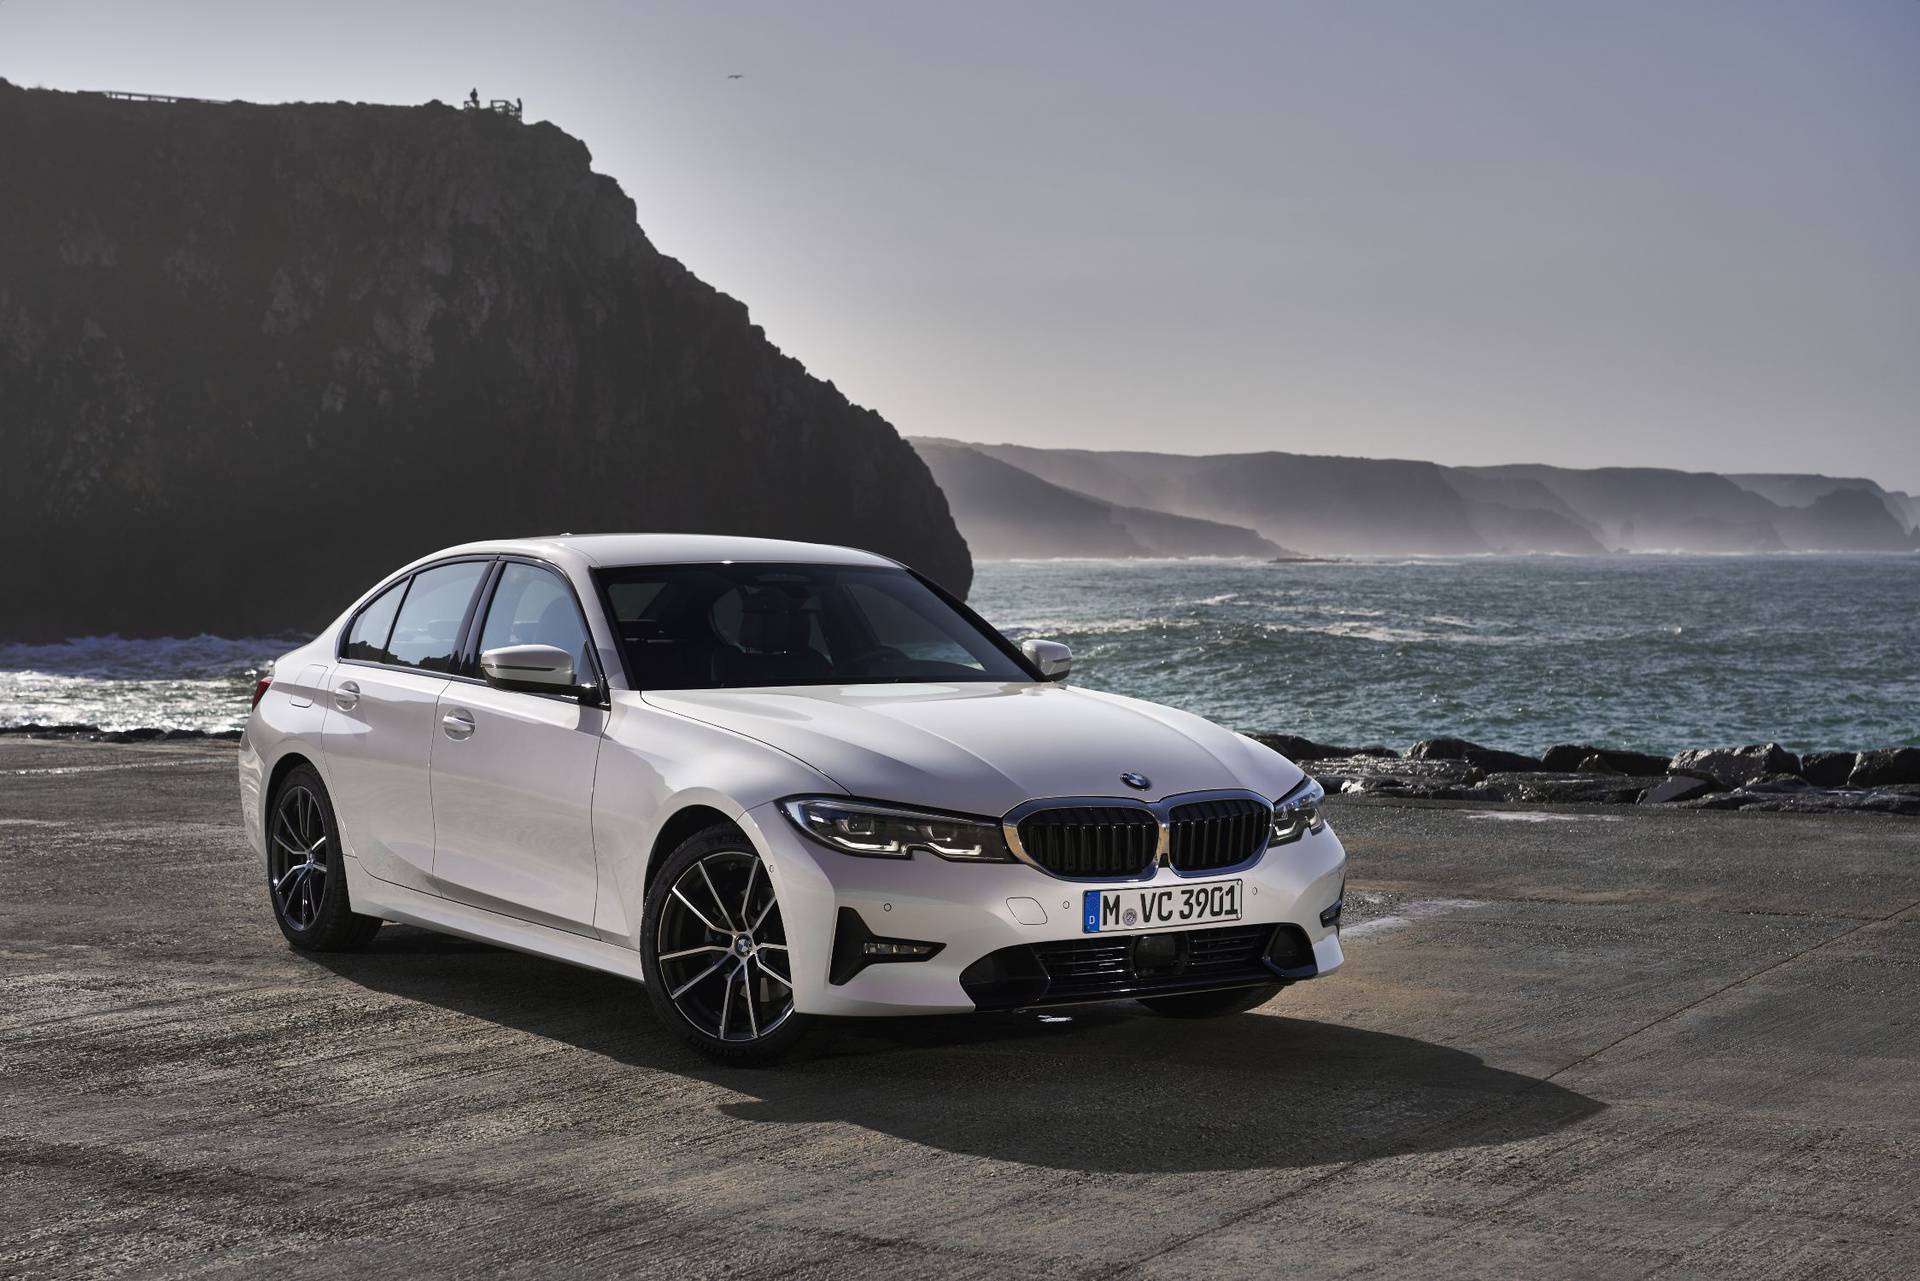 Izvrsna prilika za kupnju najpopularnijeg BMW modela